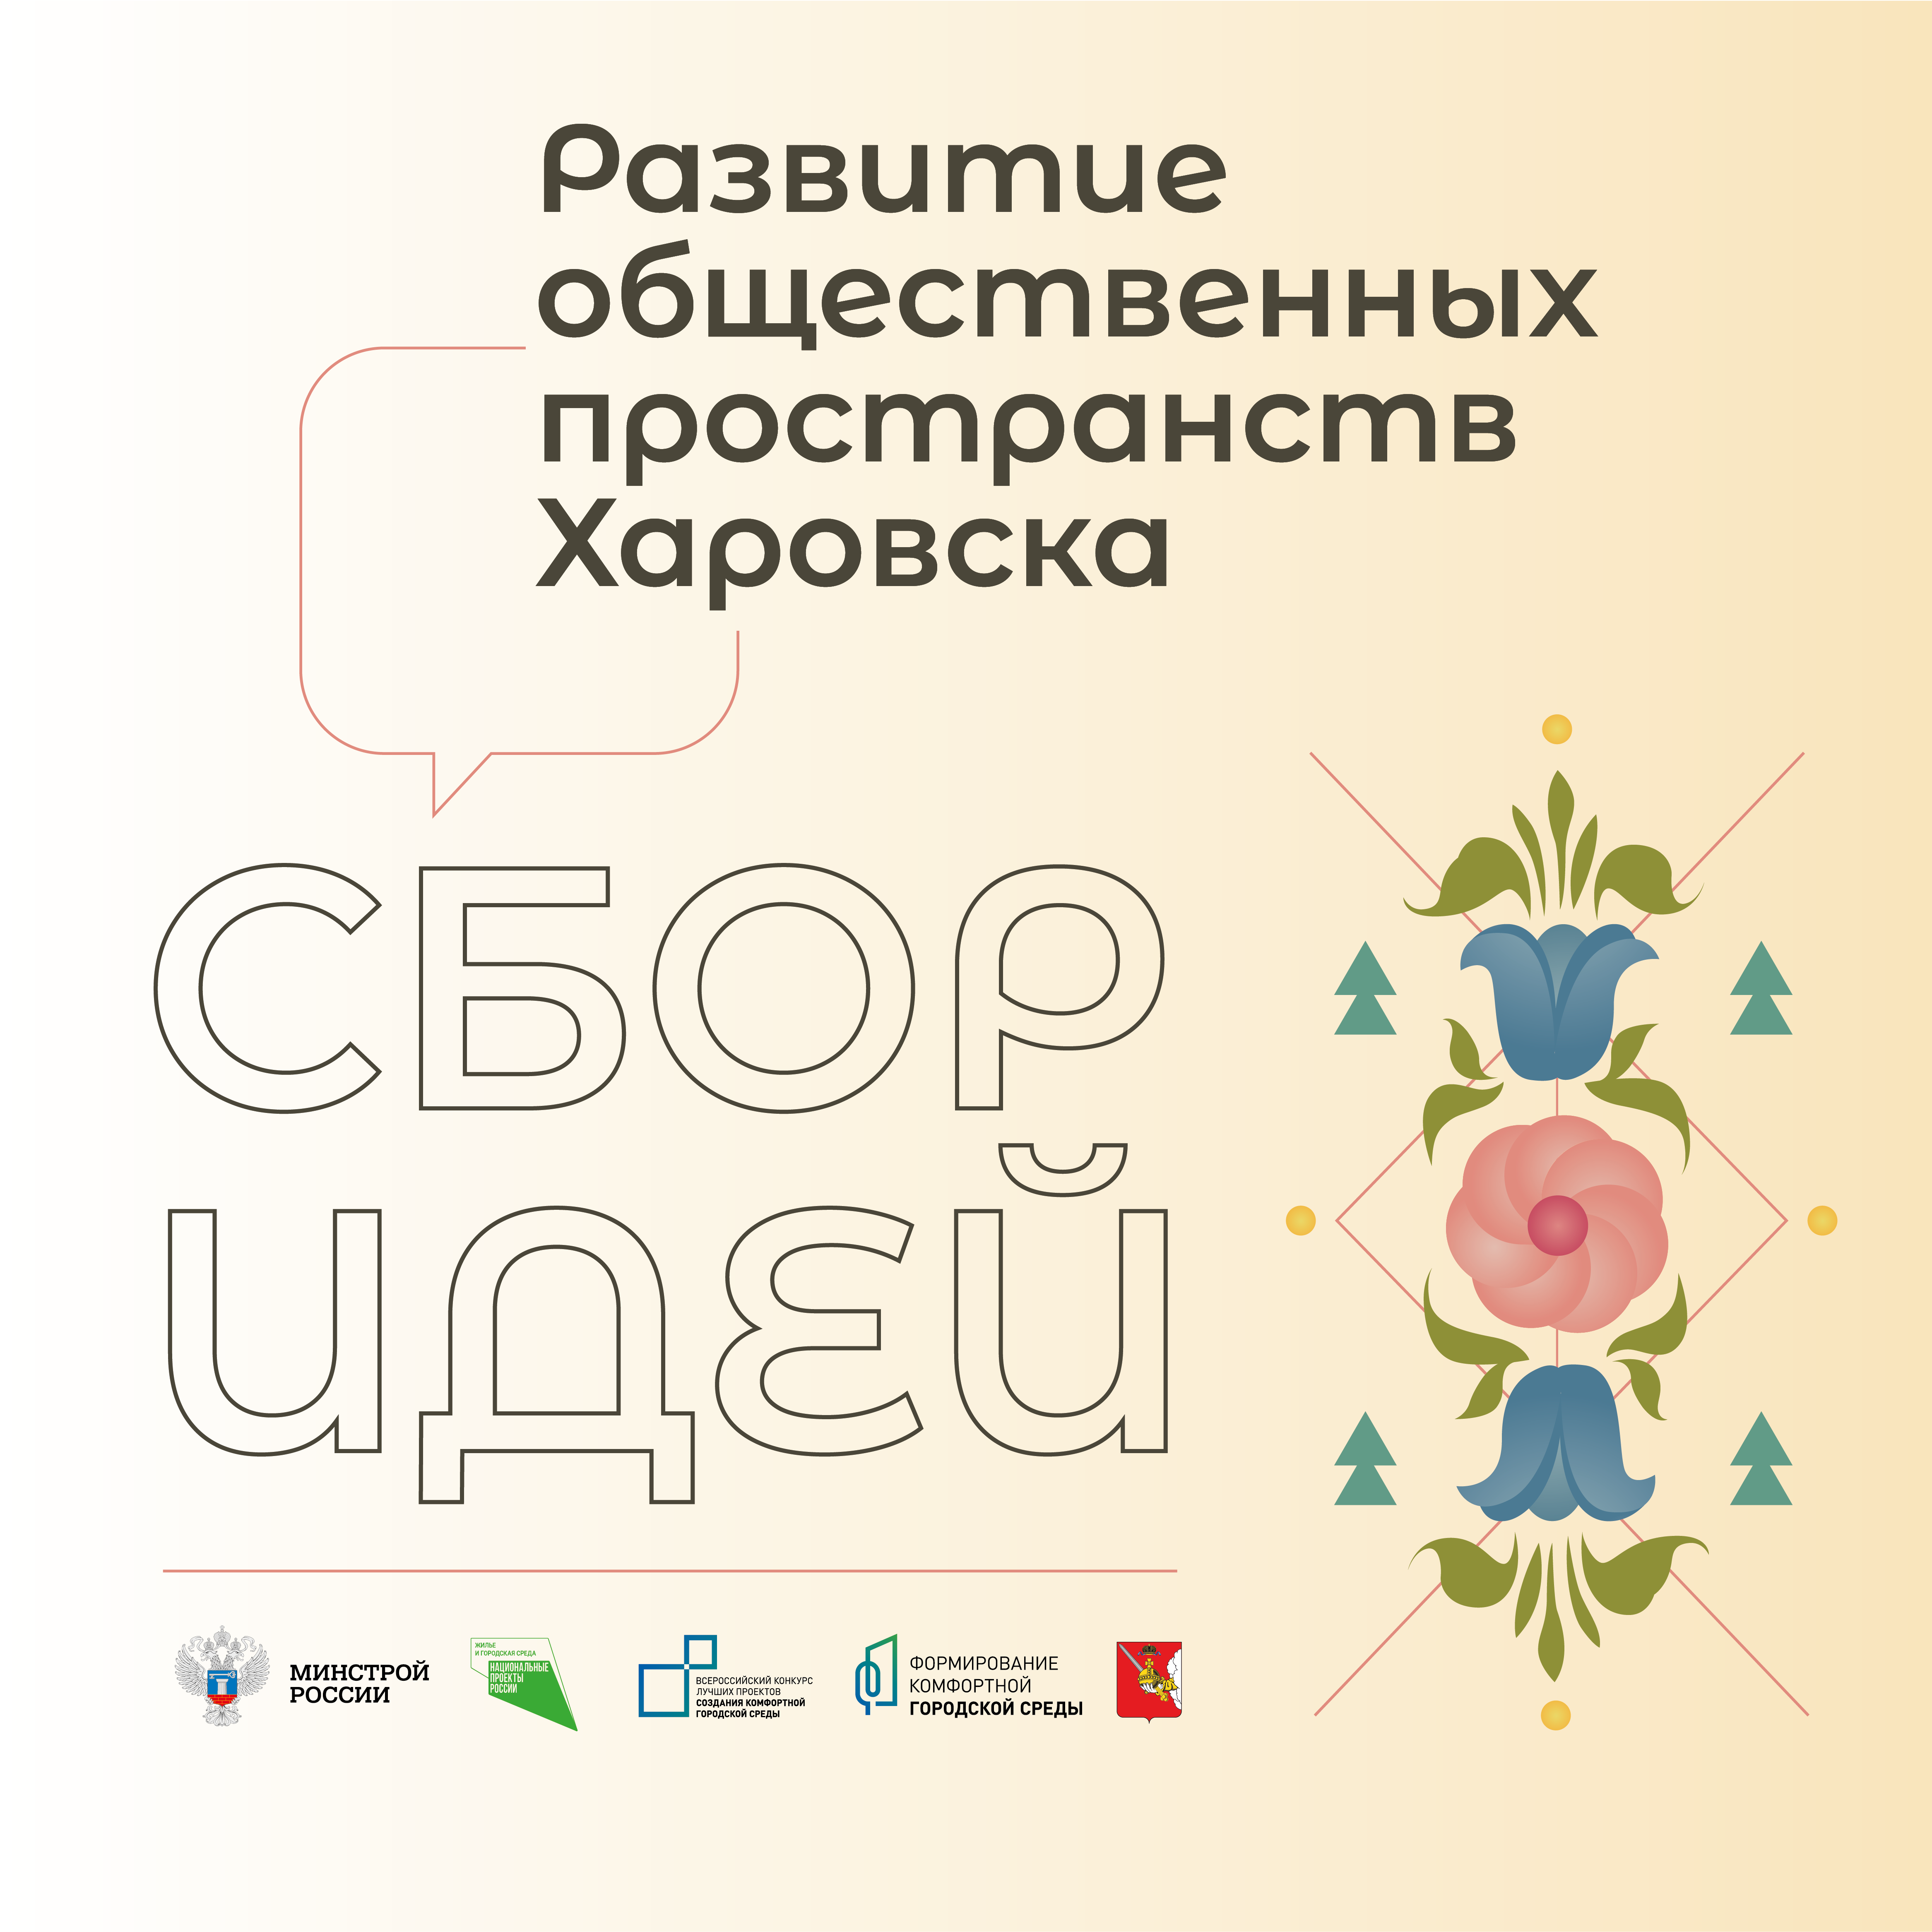 Всероссийский конкурс лучших проектов создания комфортной городской среды в малых городах и исторических поселениях.